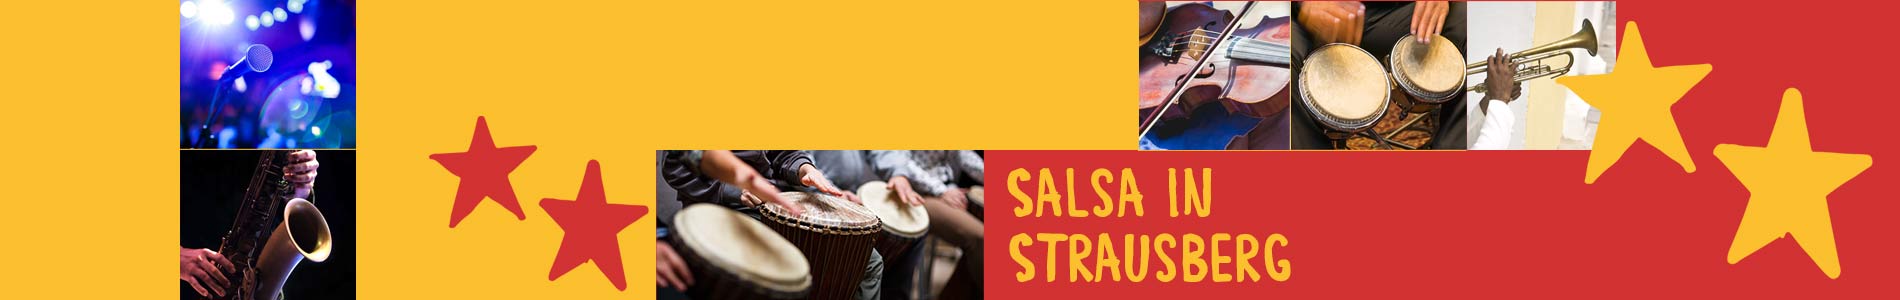 Salsa in Strausberg – Salsa lernen und tanzen, Tanzkurse, Partys, Veranstaltungen